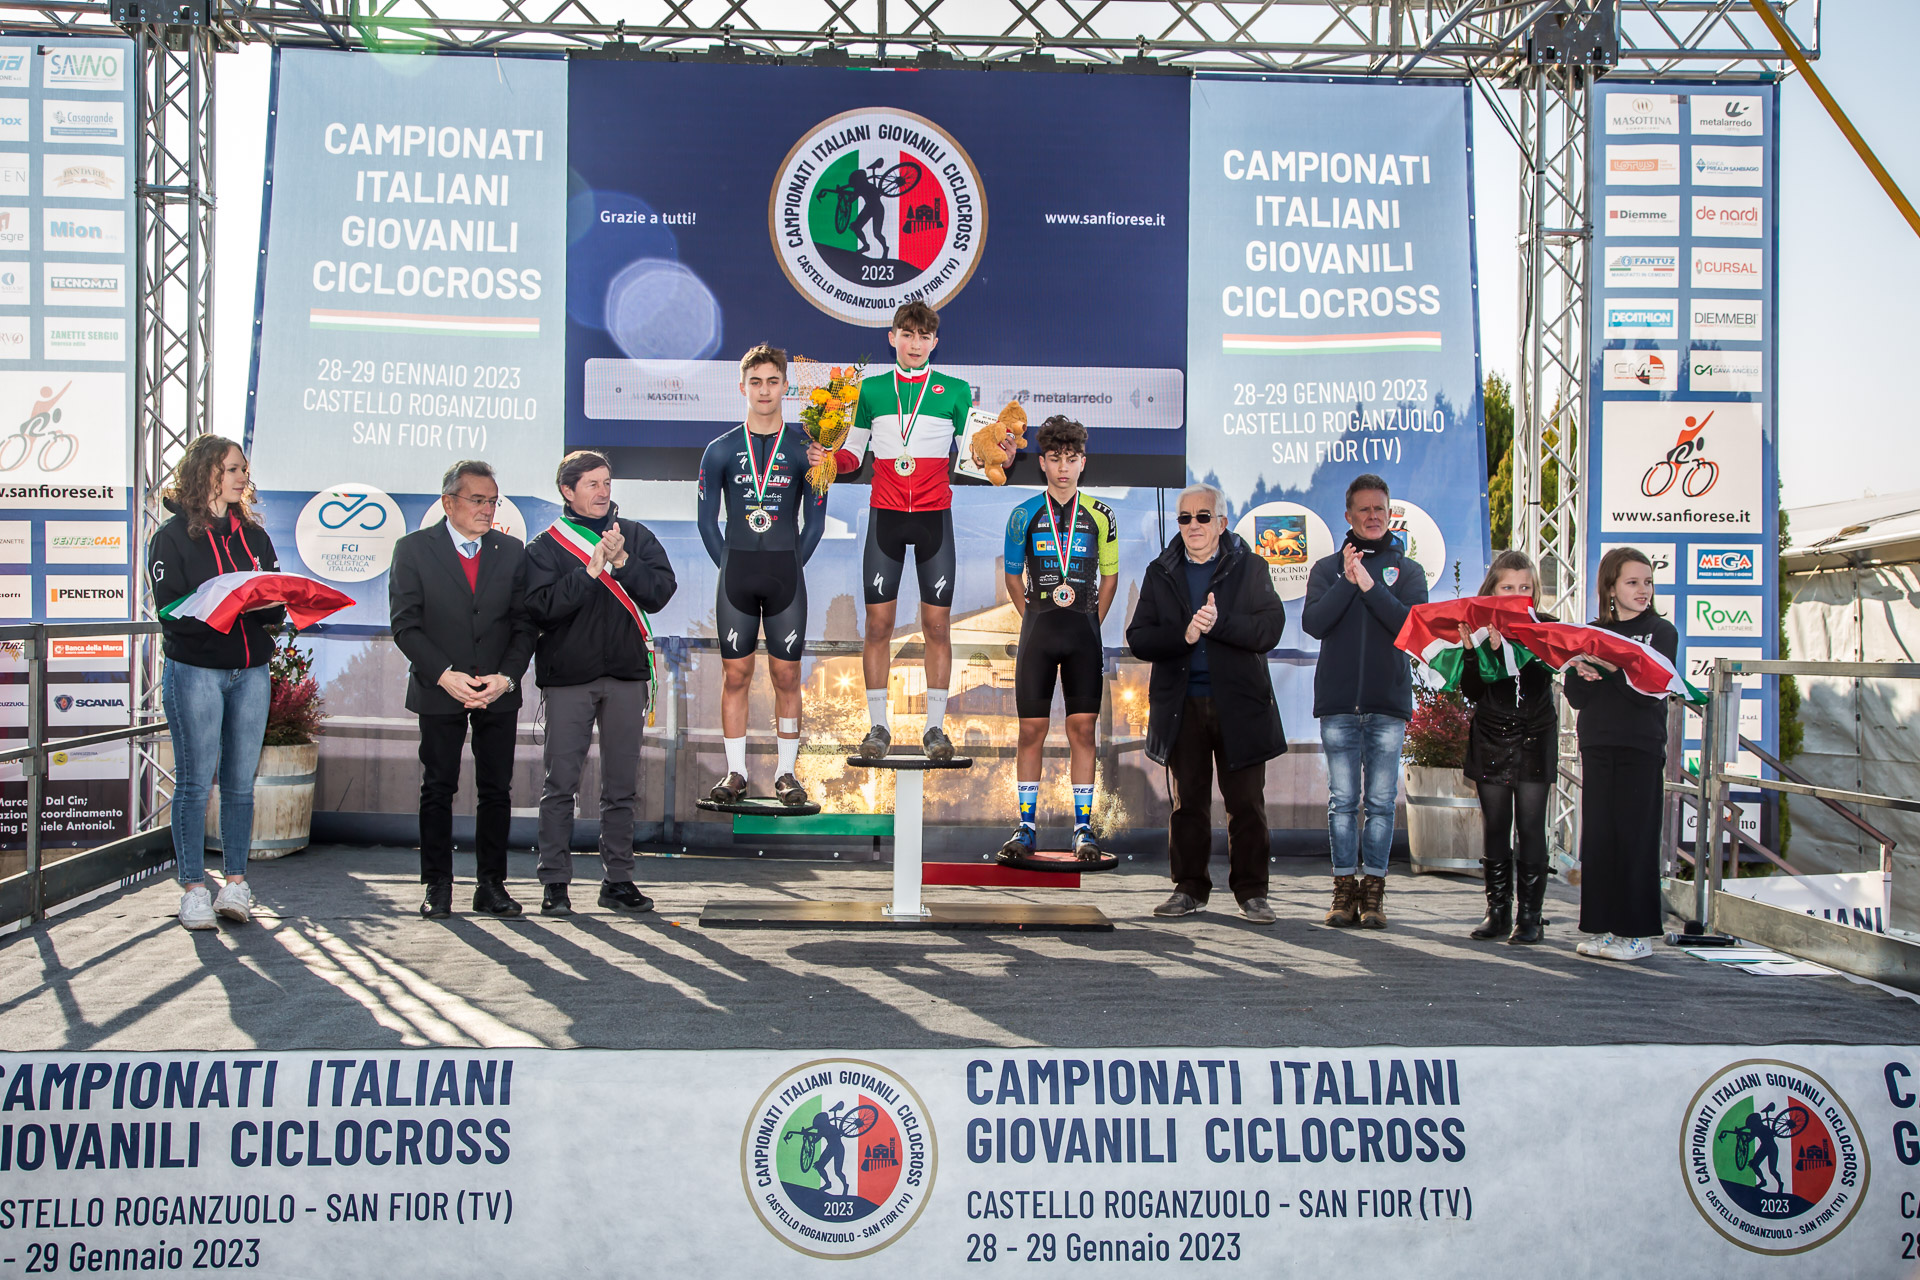 29\01\2023 – Campionati Italiani Giovanili Ciclocross 2023 (Esordienti 2)